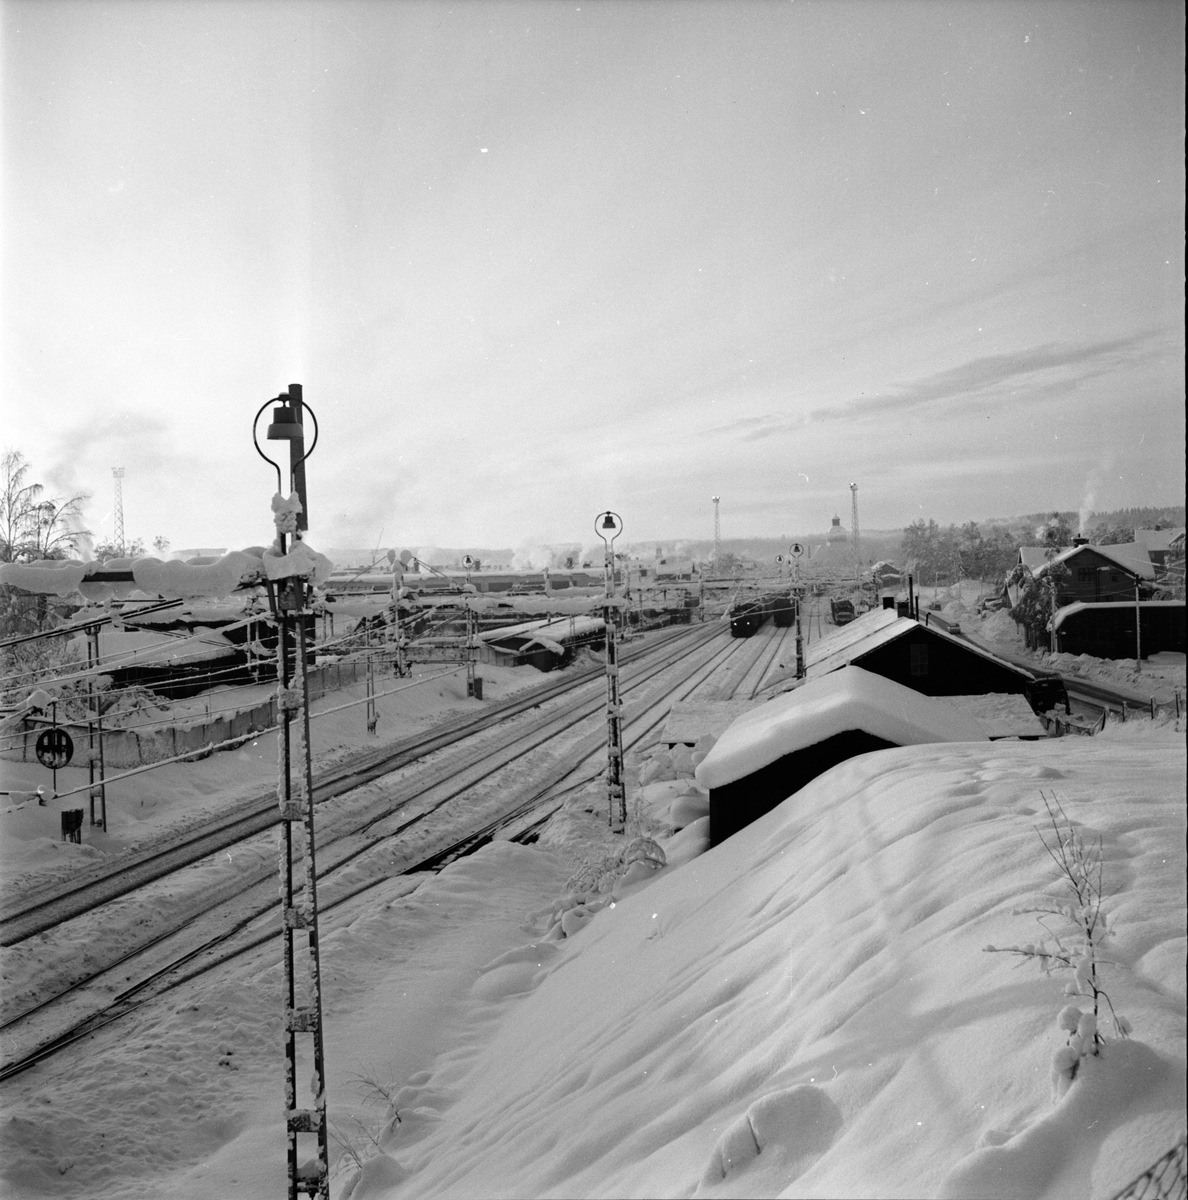 Bollnäs,
Älg på Tjärn,
Bilder från Höglundabron,
12 Januari 1967